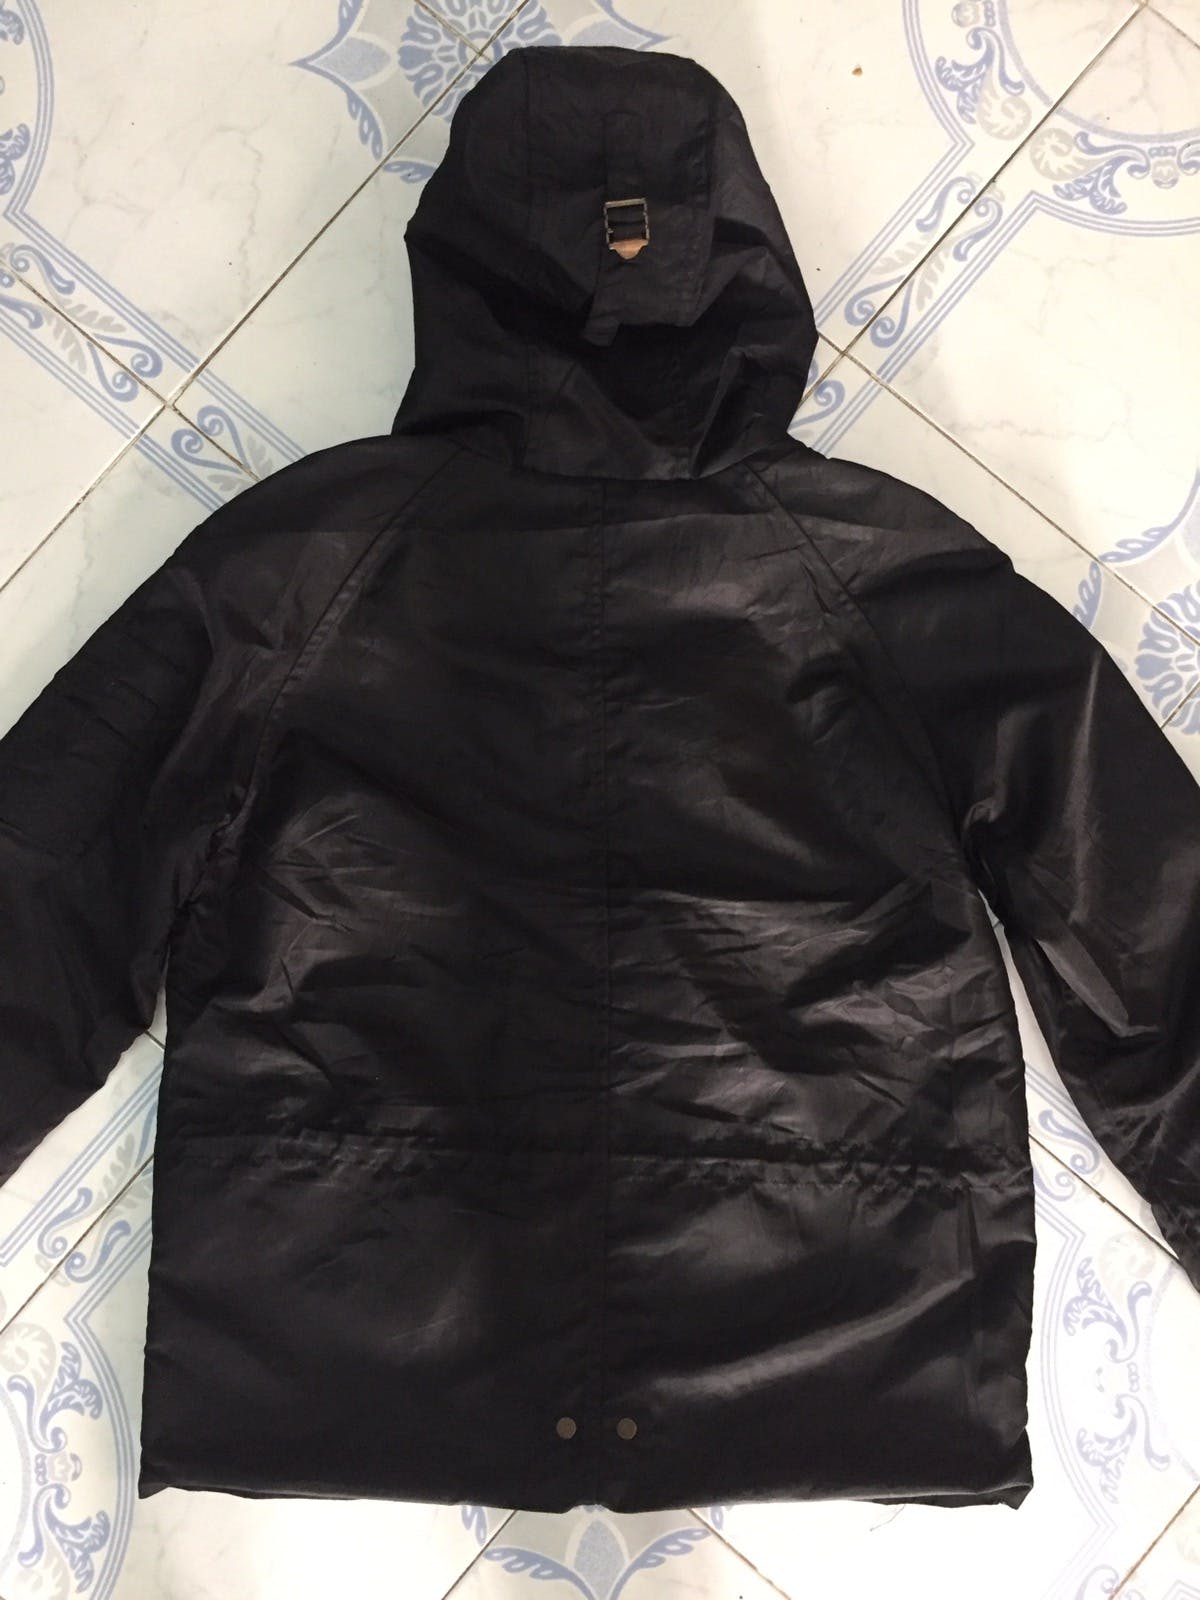 Nylon Schott combat type jacket cap hoodie - 11